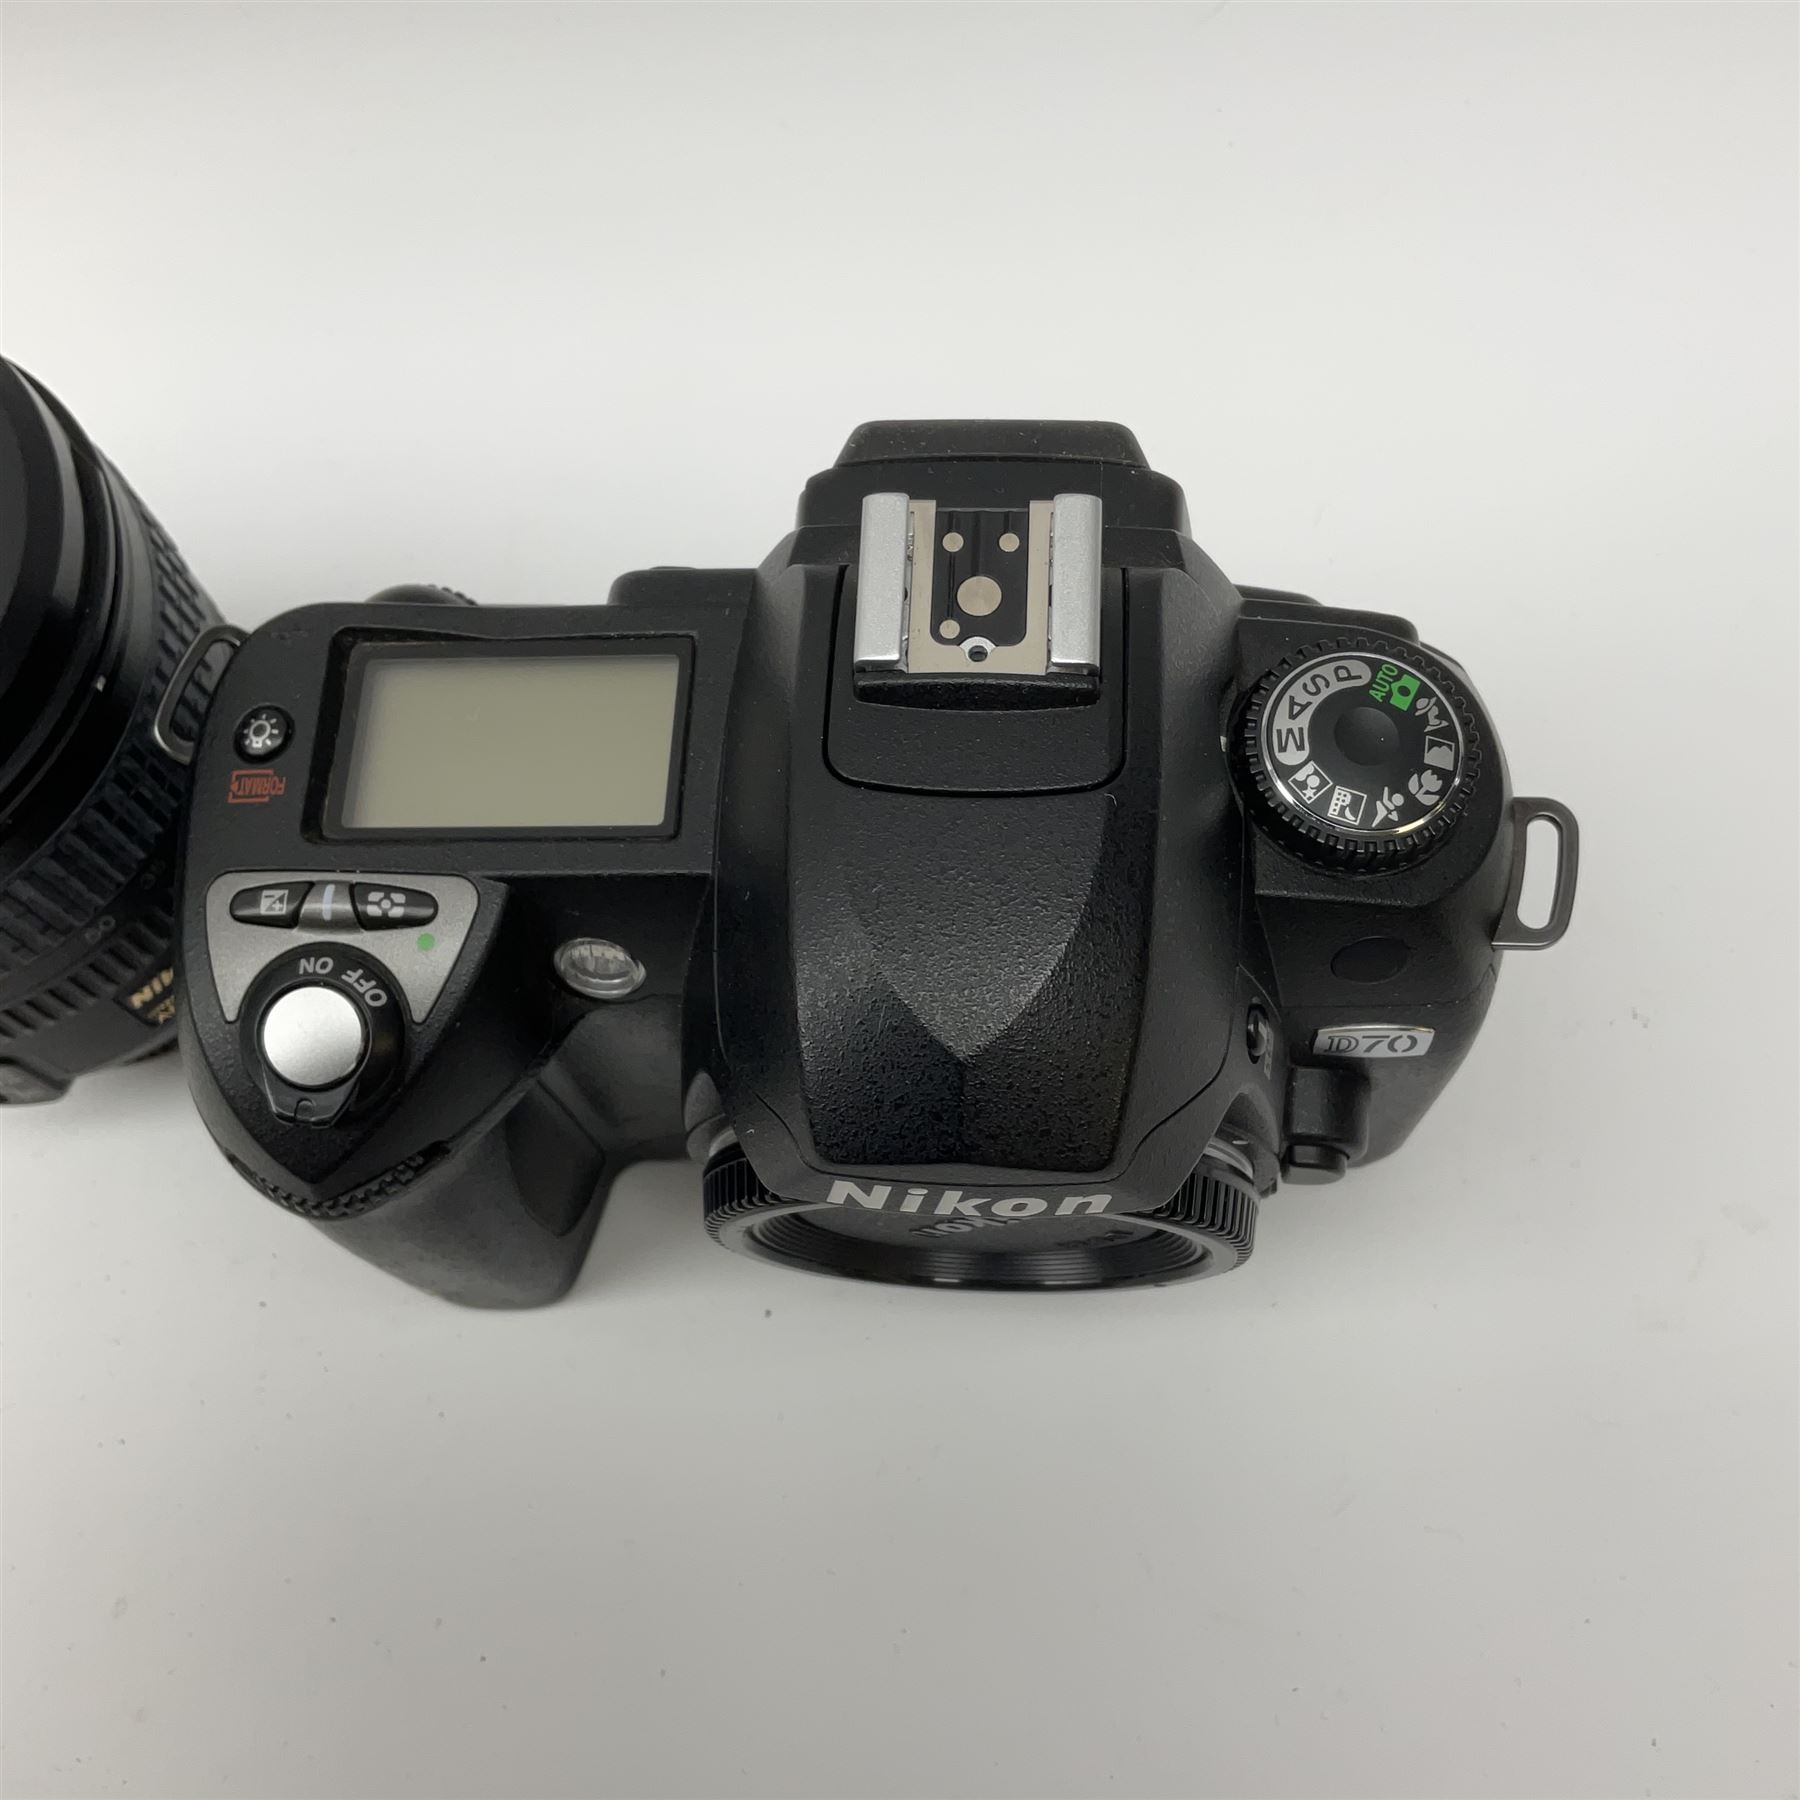 Nikon D70 Kit with AF-S Zoom Nikkor 18-70mm f/3.5~4.5G lens - Image 6 of 8